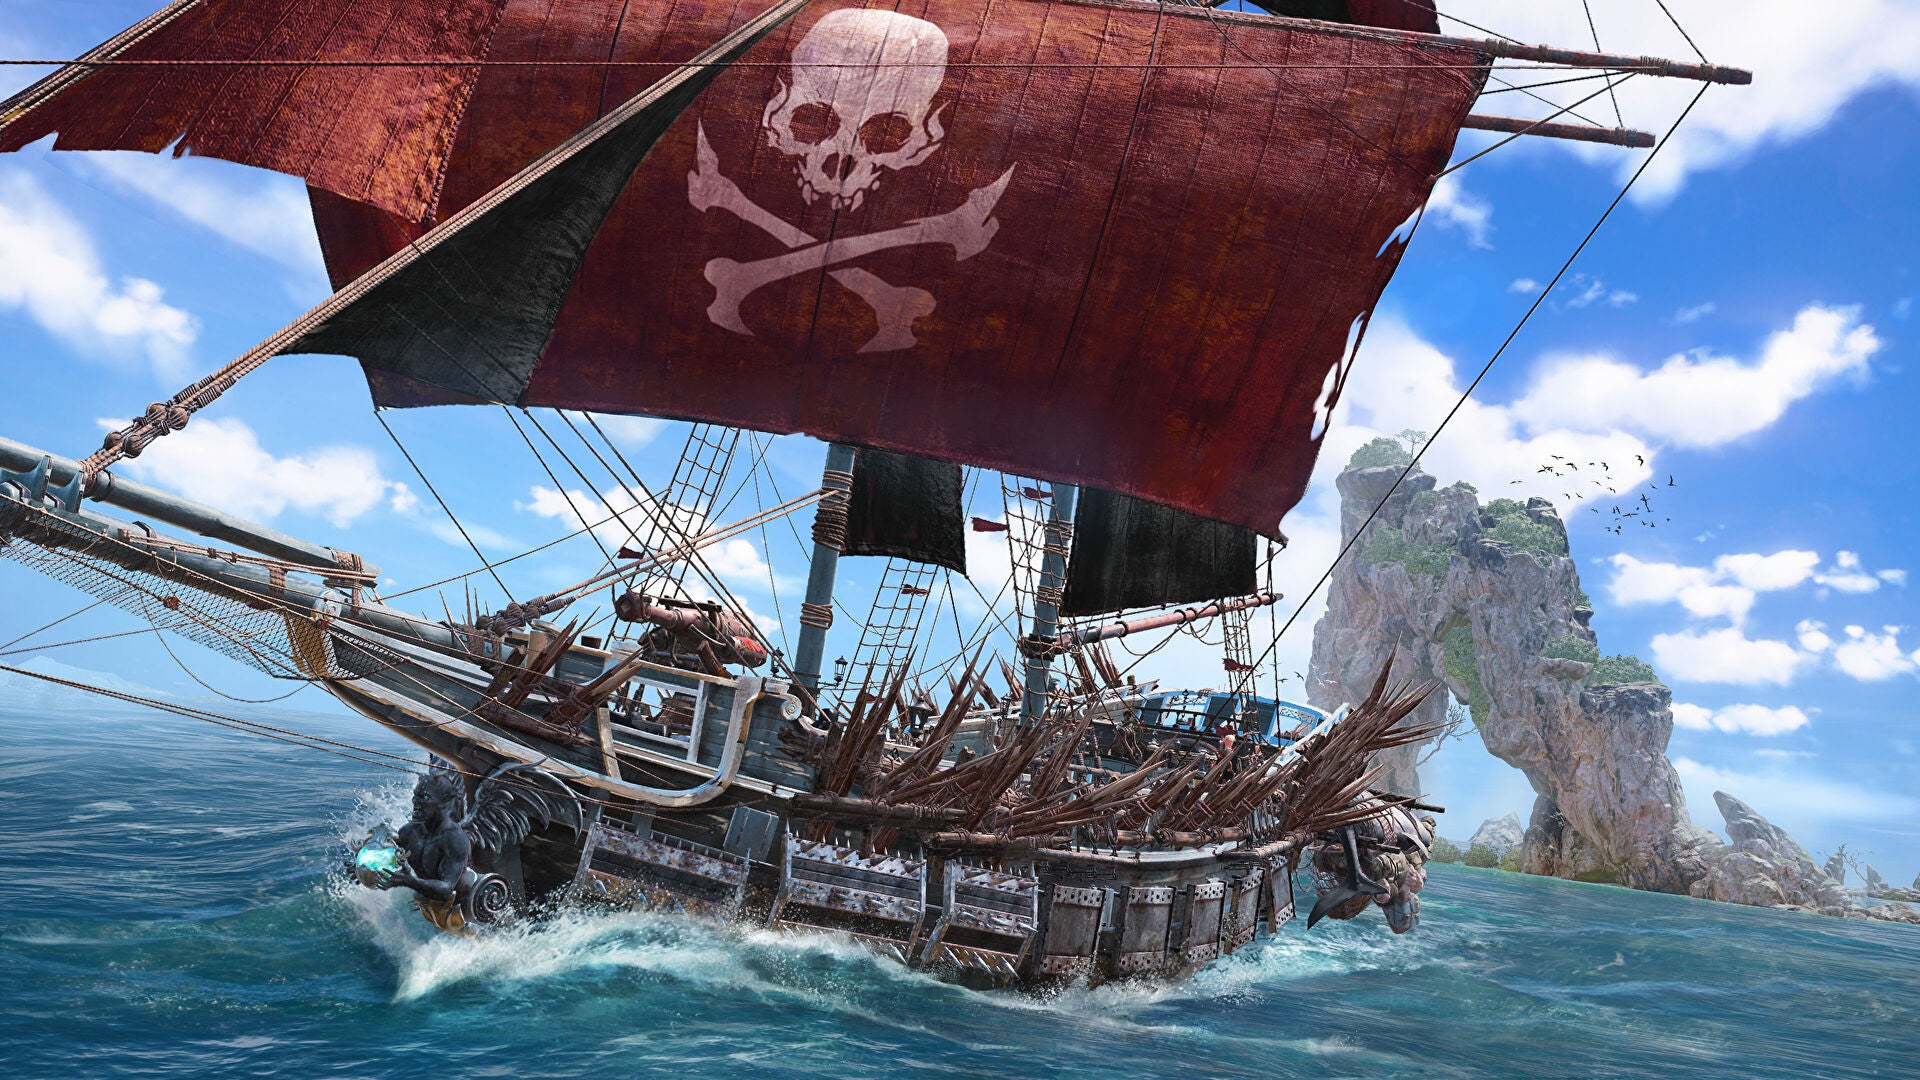 《骷髅与骨头》的宣传图片，上面显示着一艘带有深红色帆的大型木质船只在明朗的蓝天下破浪前行。